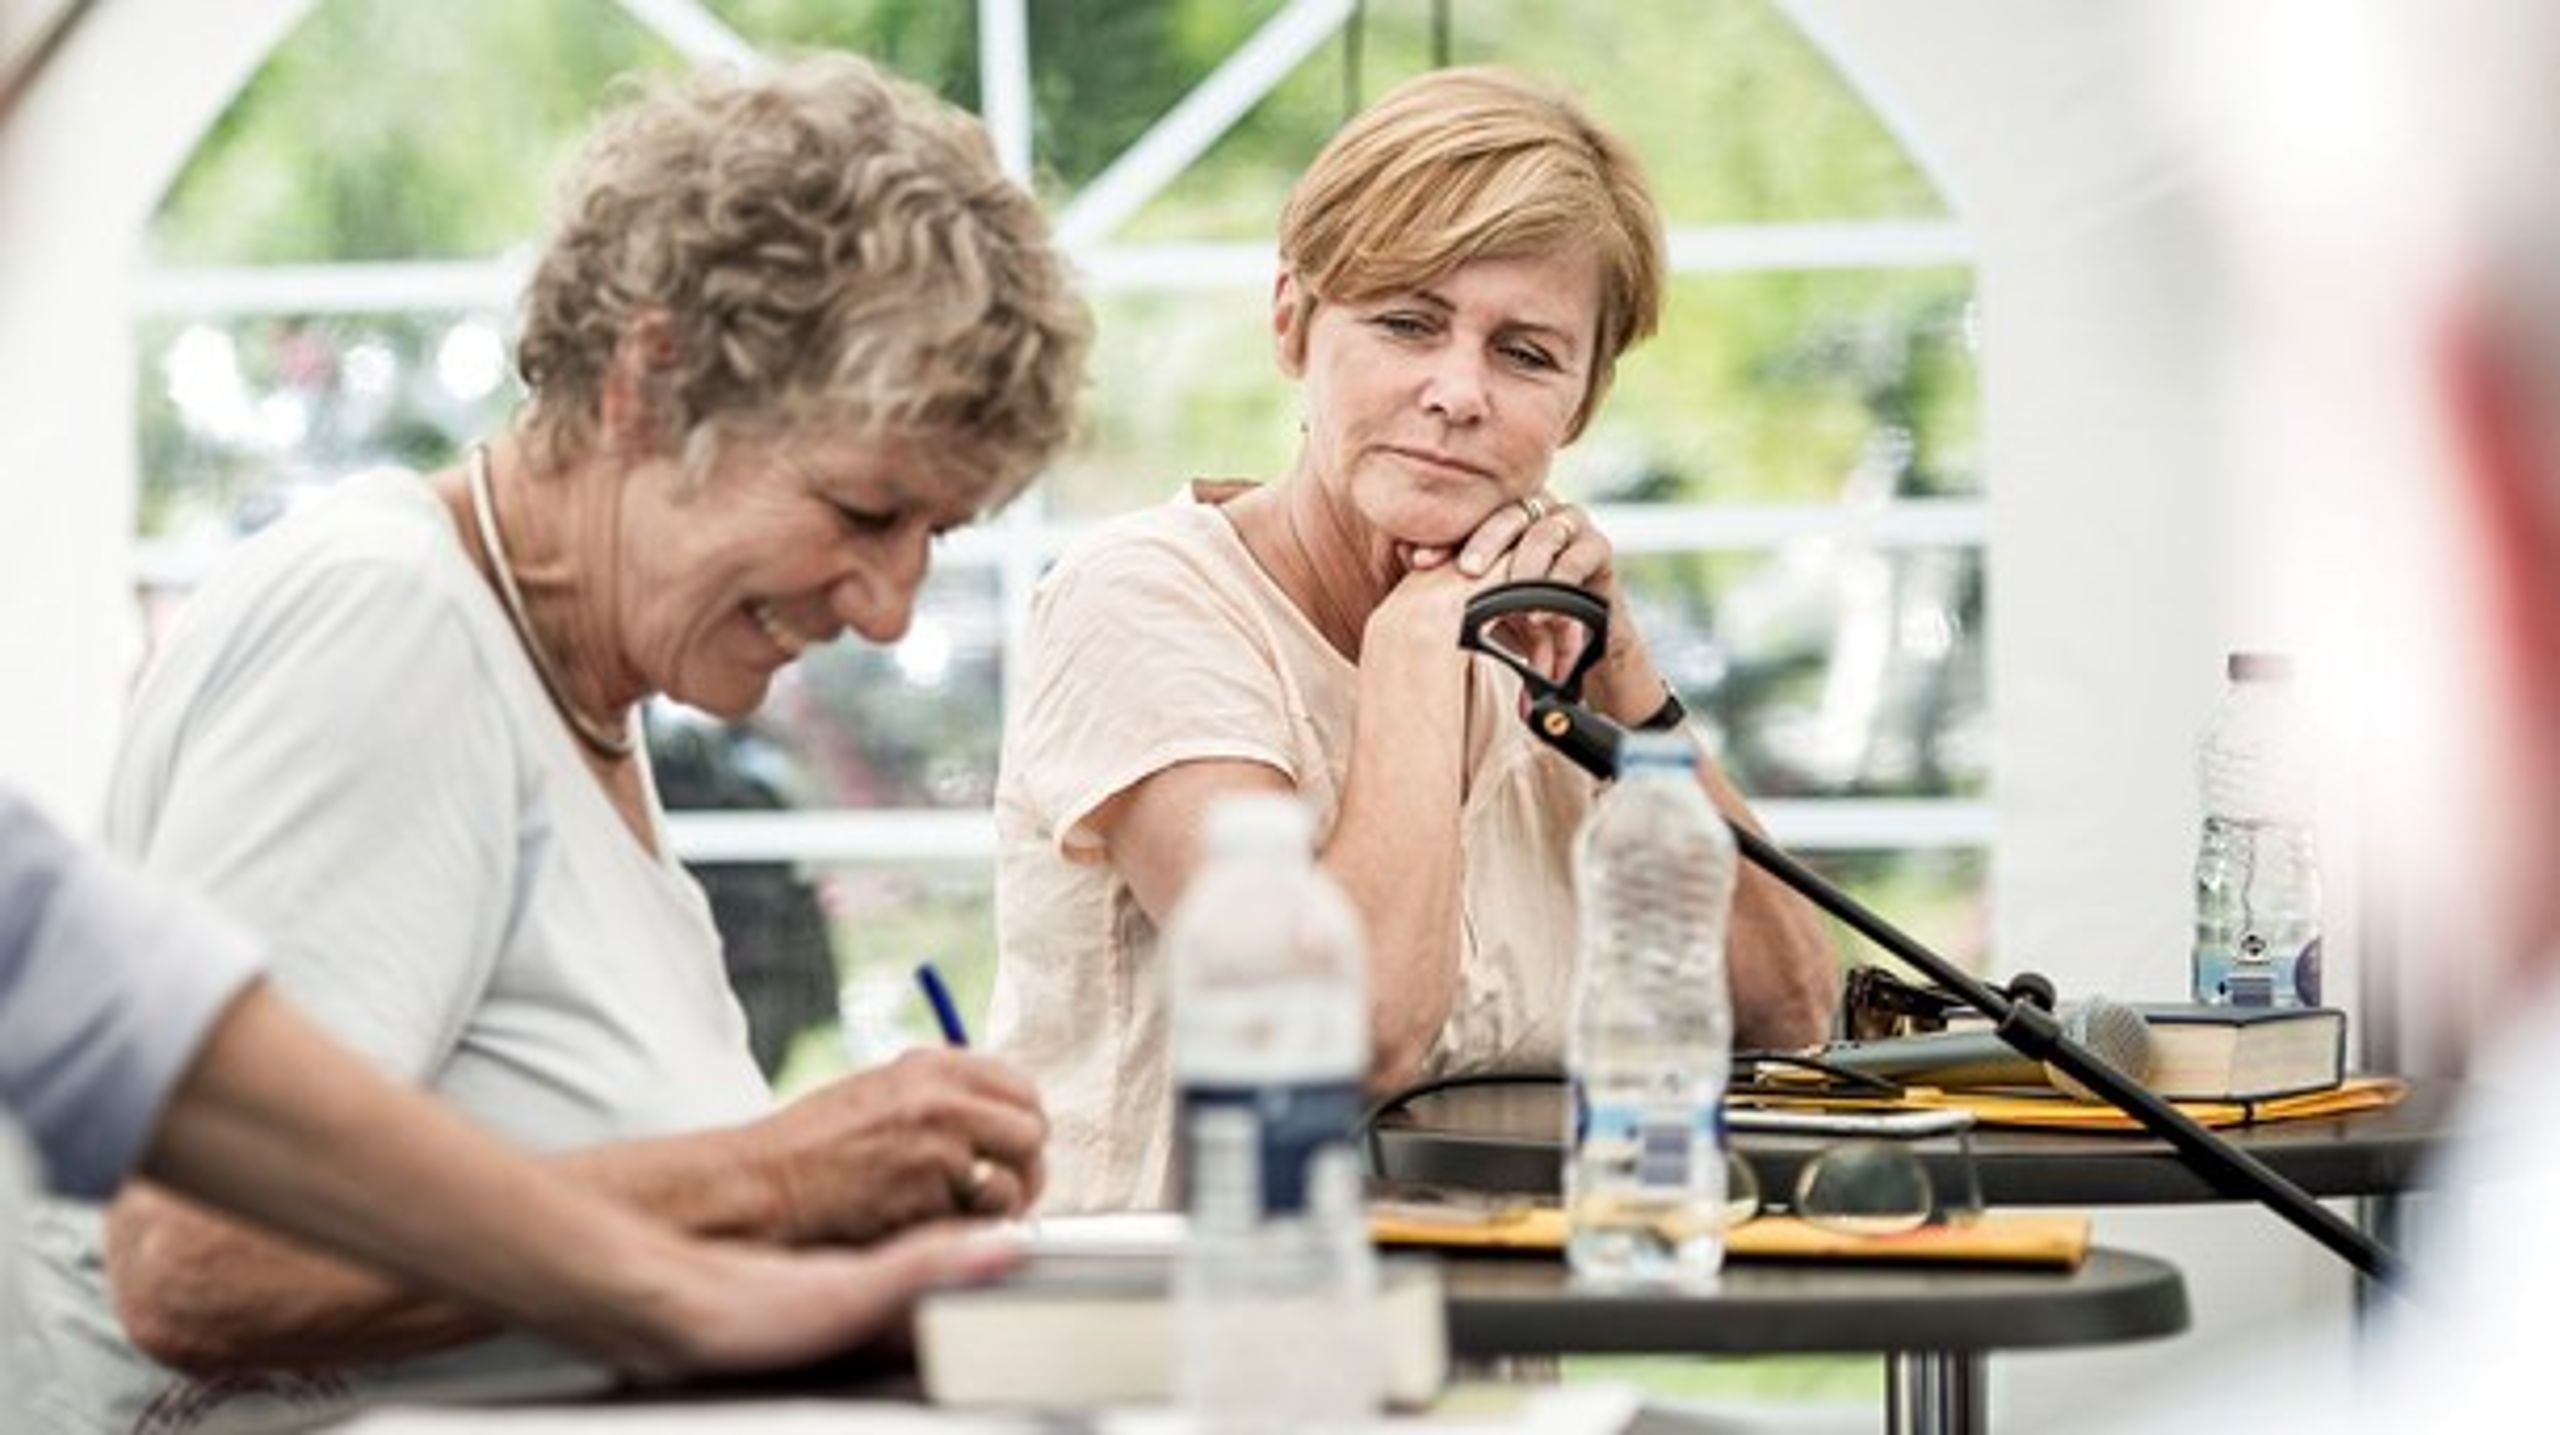 SF's Margrete Auken og LA's Mette Bock til Folkemøde i 2015. De er nu begge udpeget til spidskandidater til EU-parlamentsvalget.